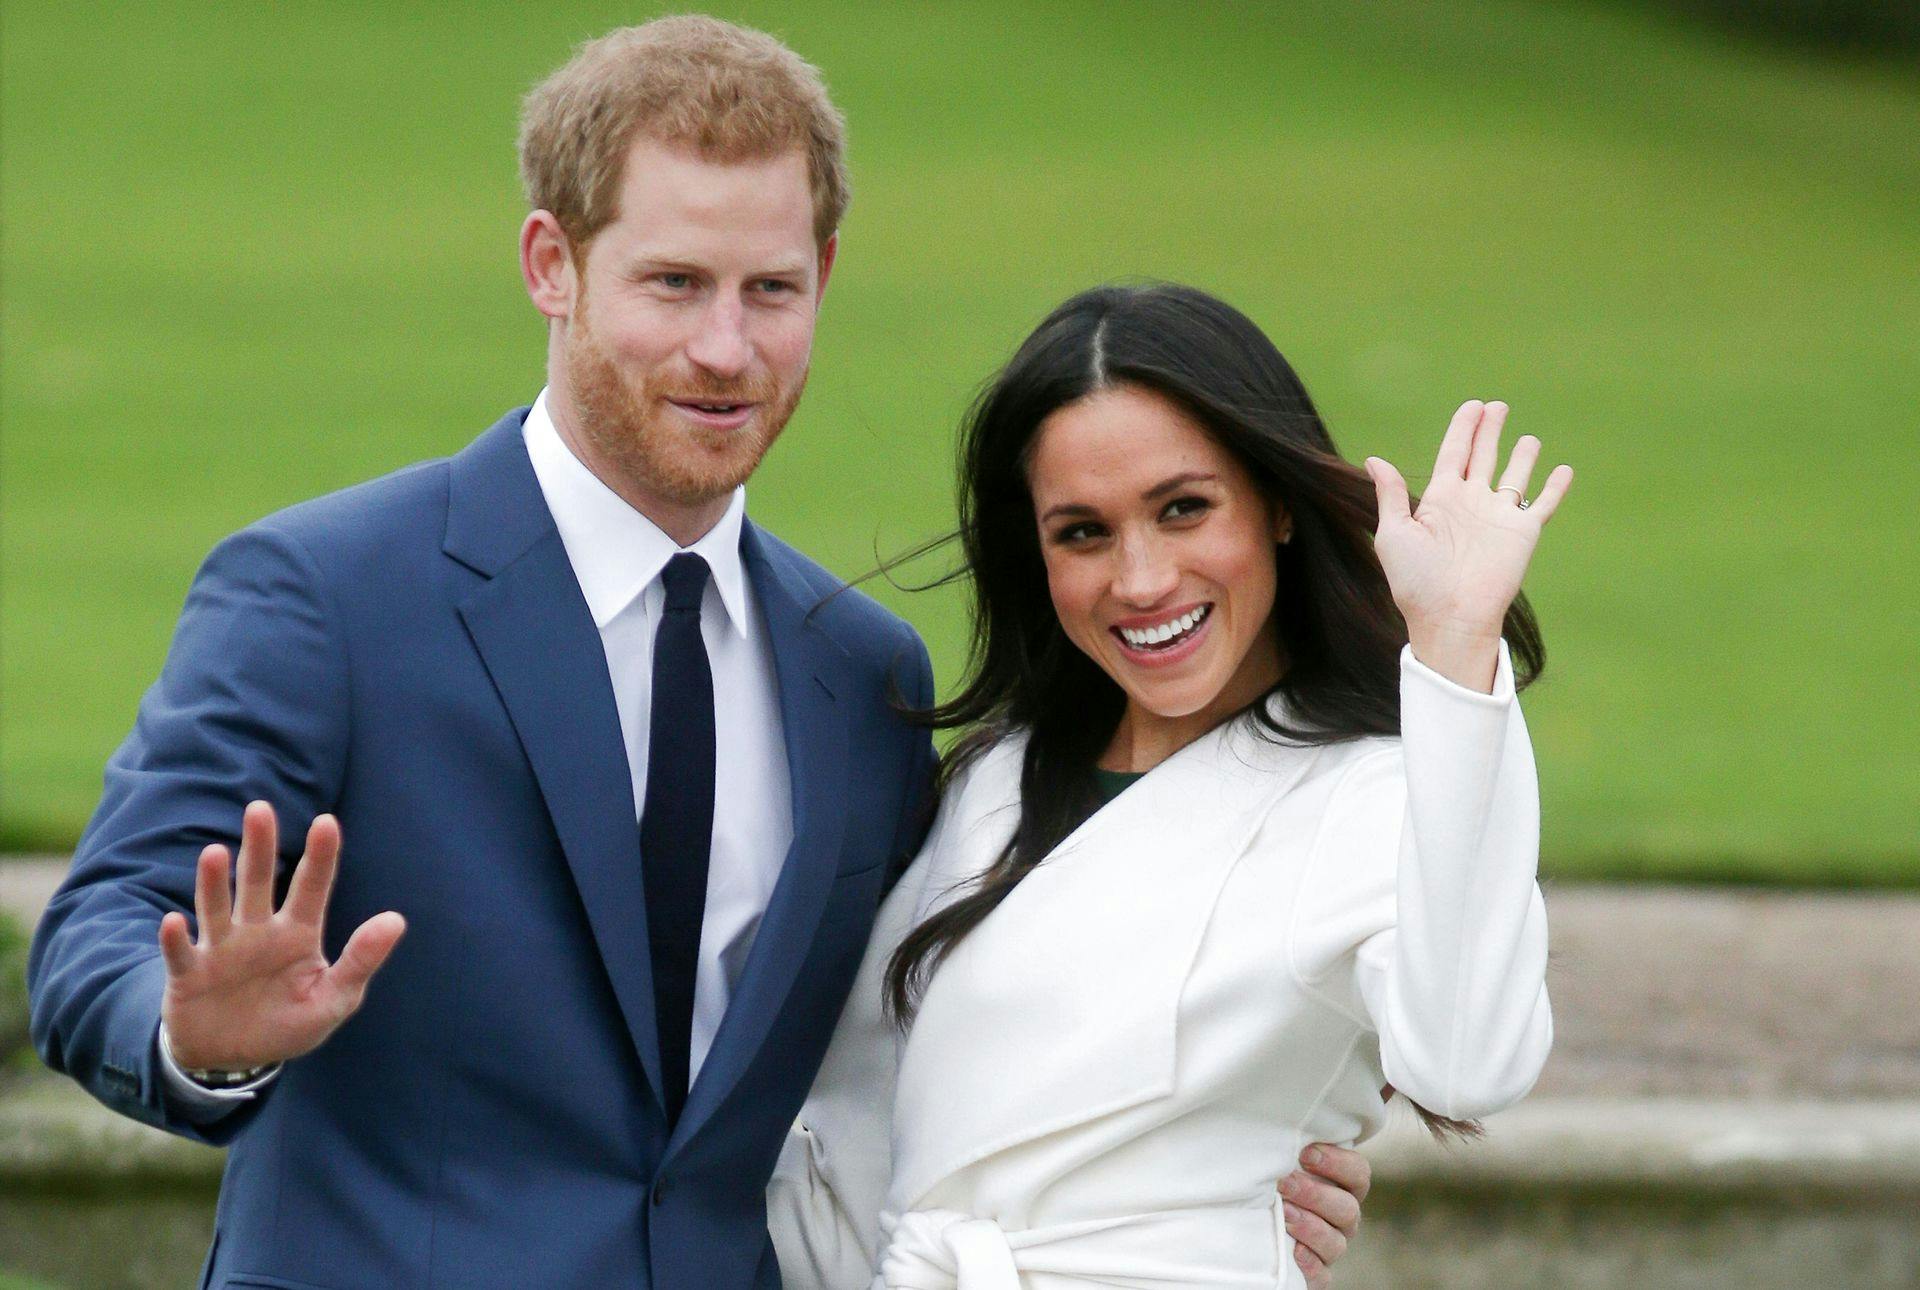 Sussex-parret, prins Harry og Meghan Markle, har ikke travlt med at få udgivet deres kommende realityserie.
